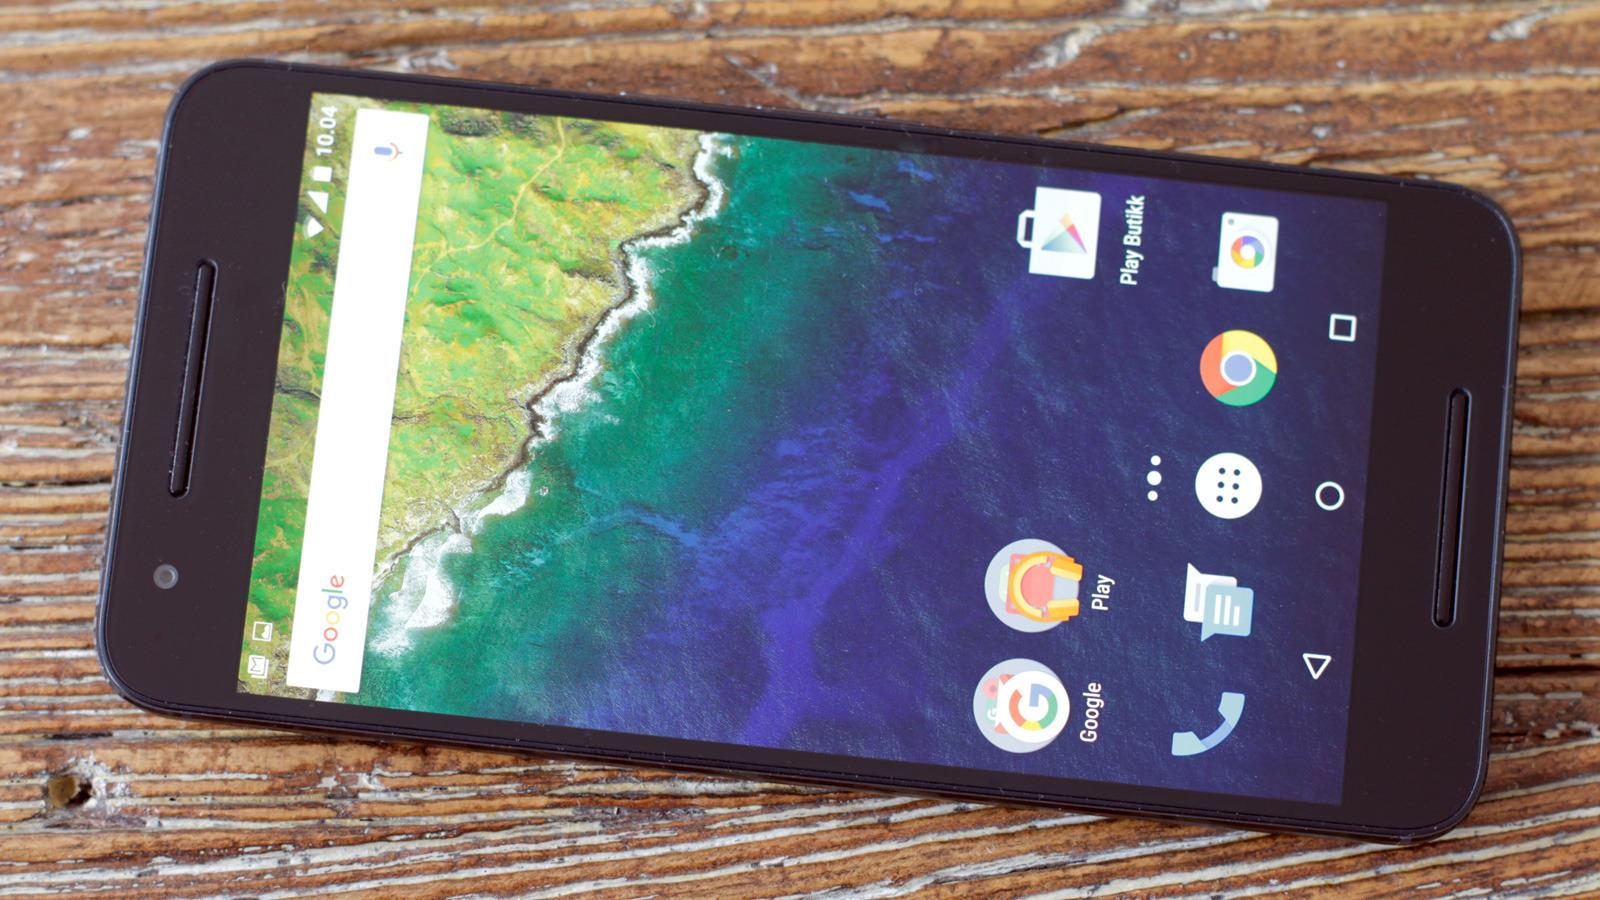 Nexus 6P tappes for strøm ekstra raskt etter oppdateringen, ifølge noen brukere.